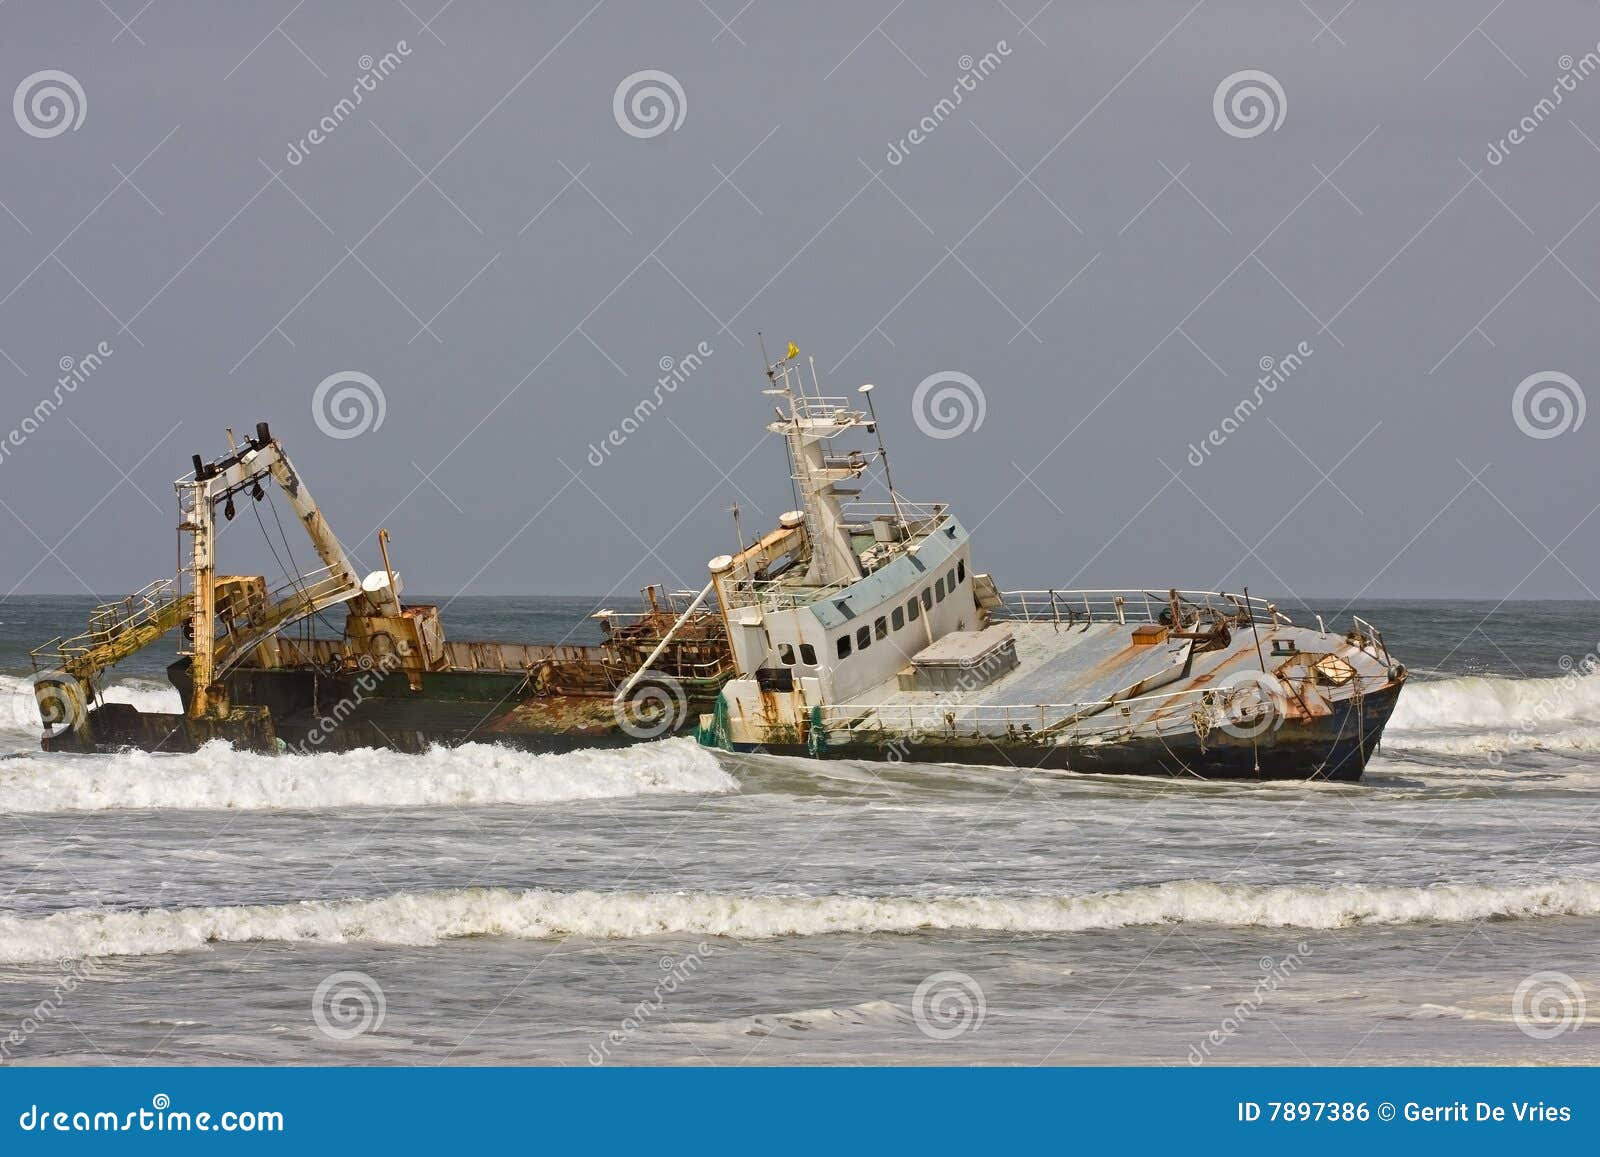 stranded ship